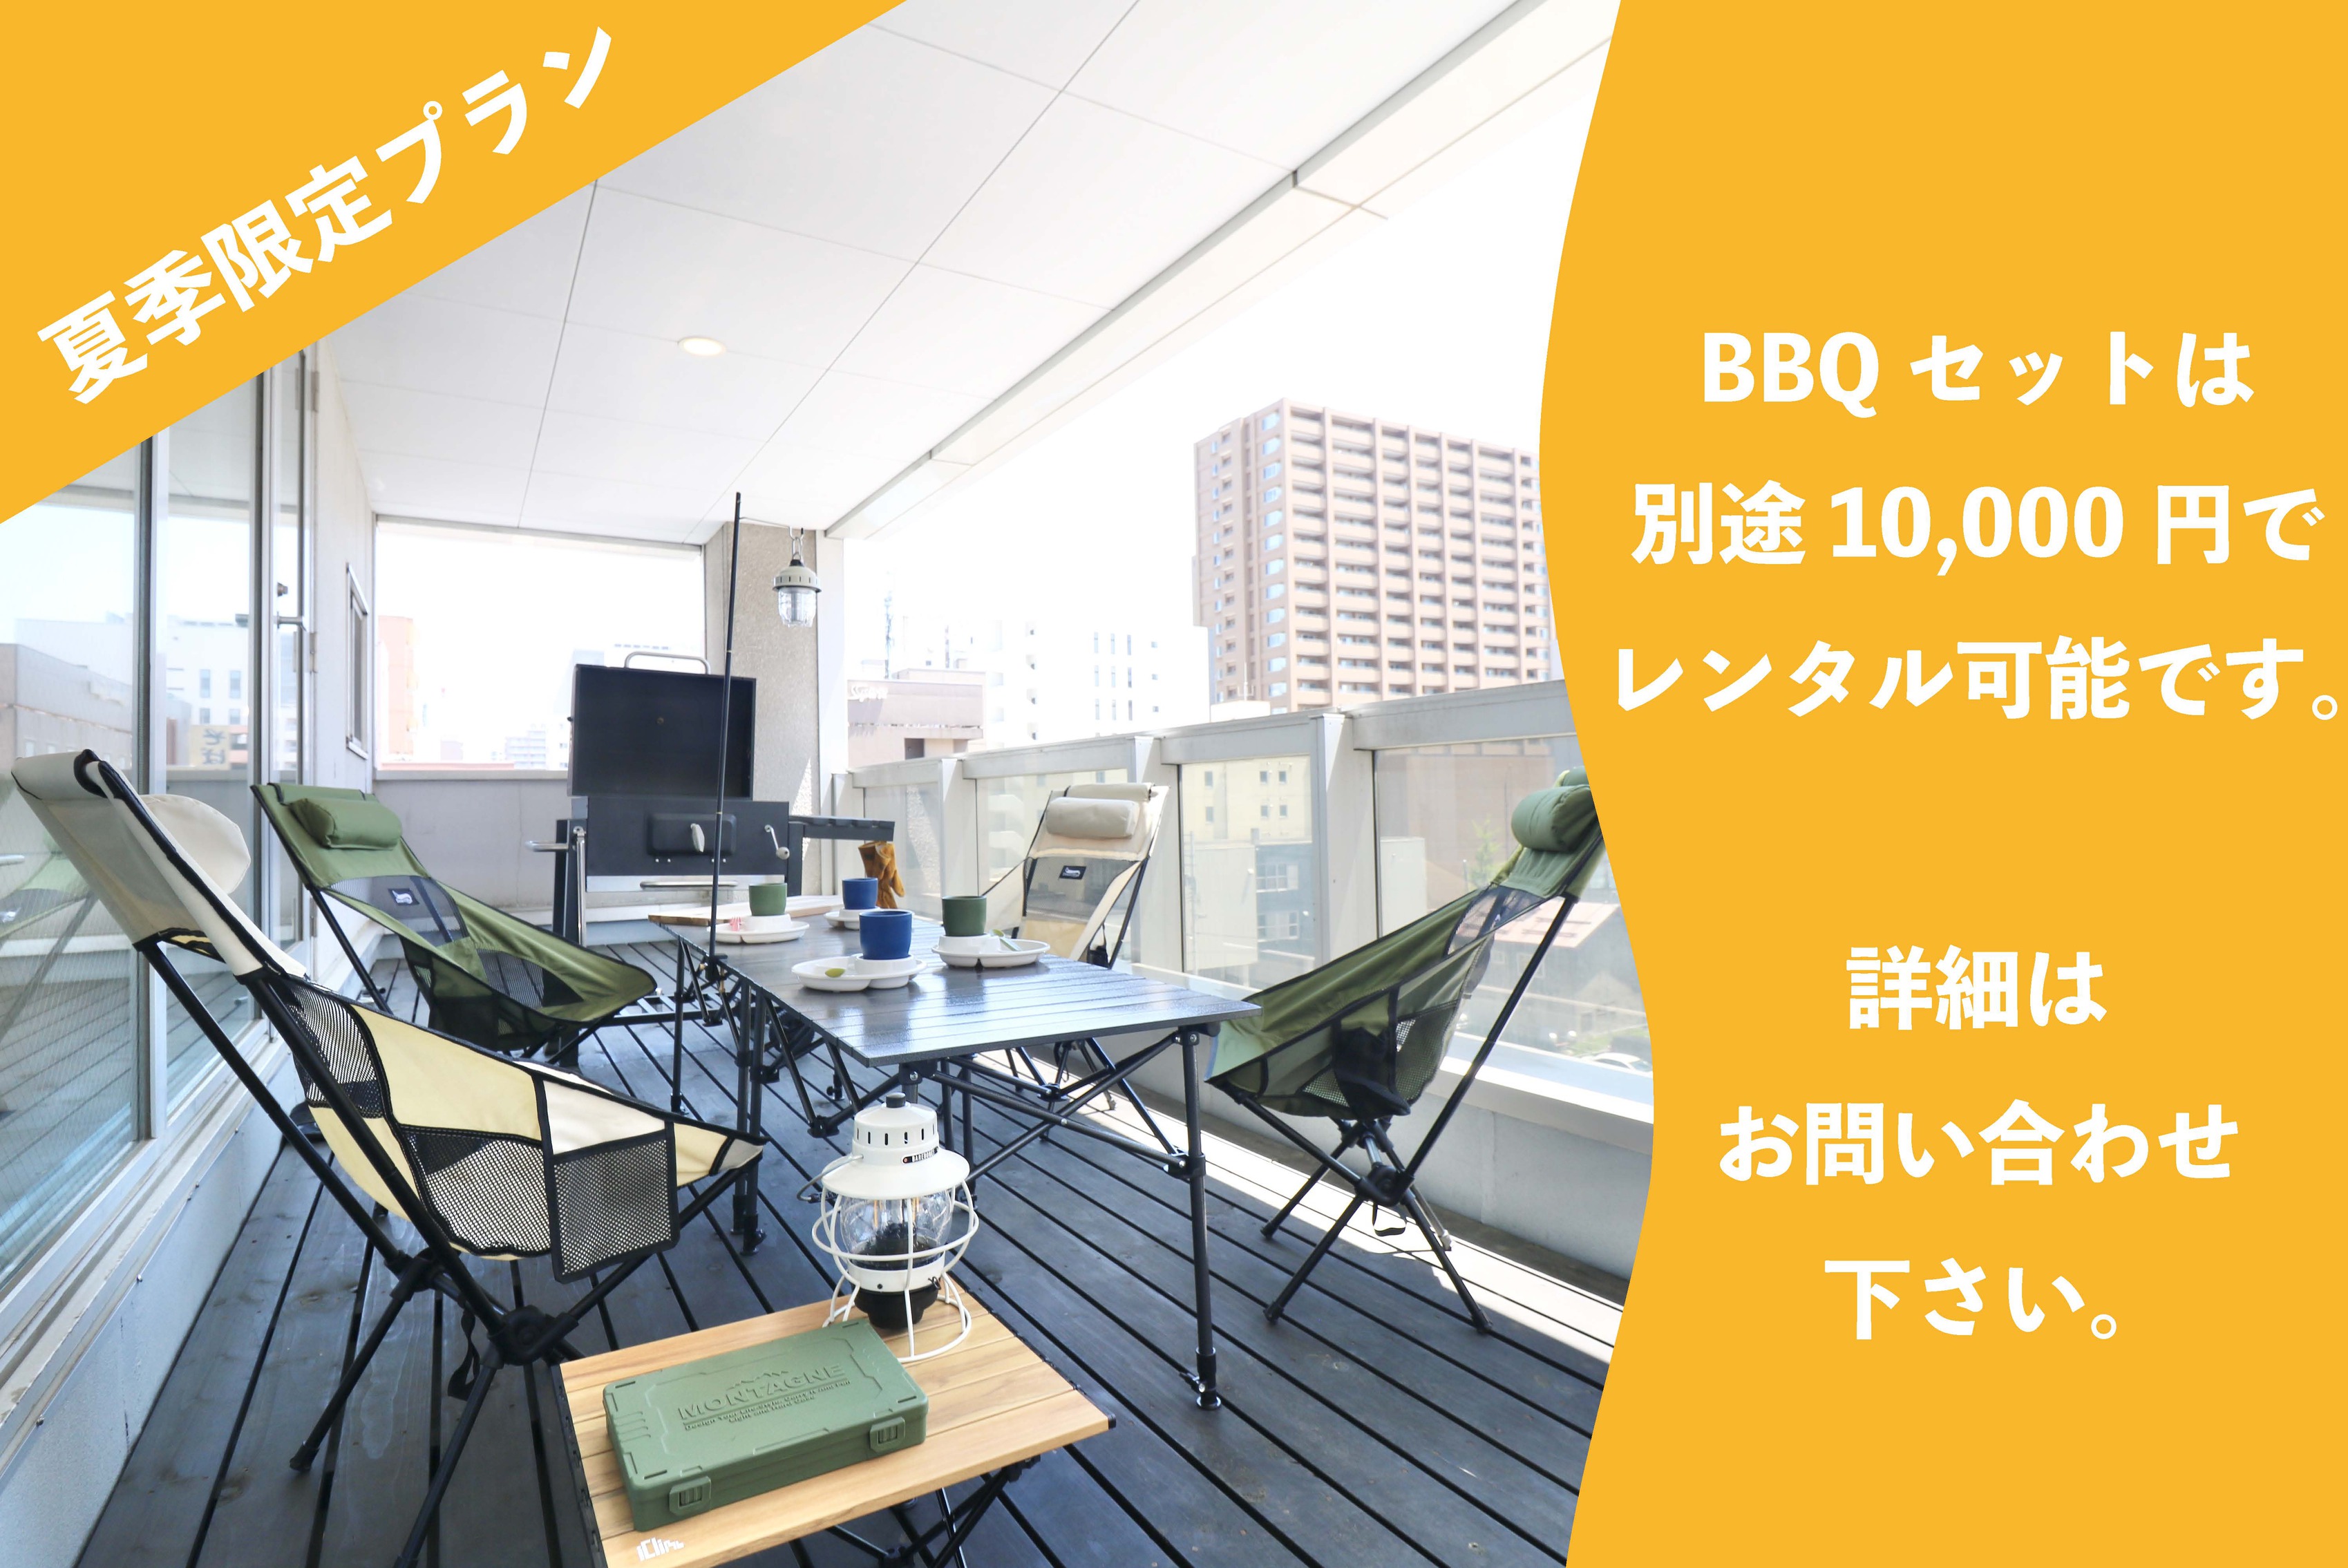 【夏季限定プラン】 BBQセットは別途10，000円でレンタル可能です。 詳細はお問い合わせください